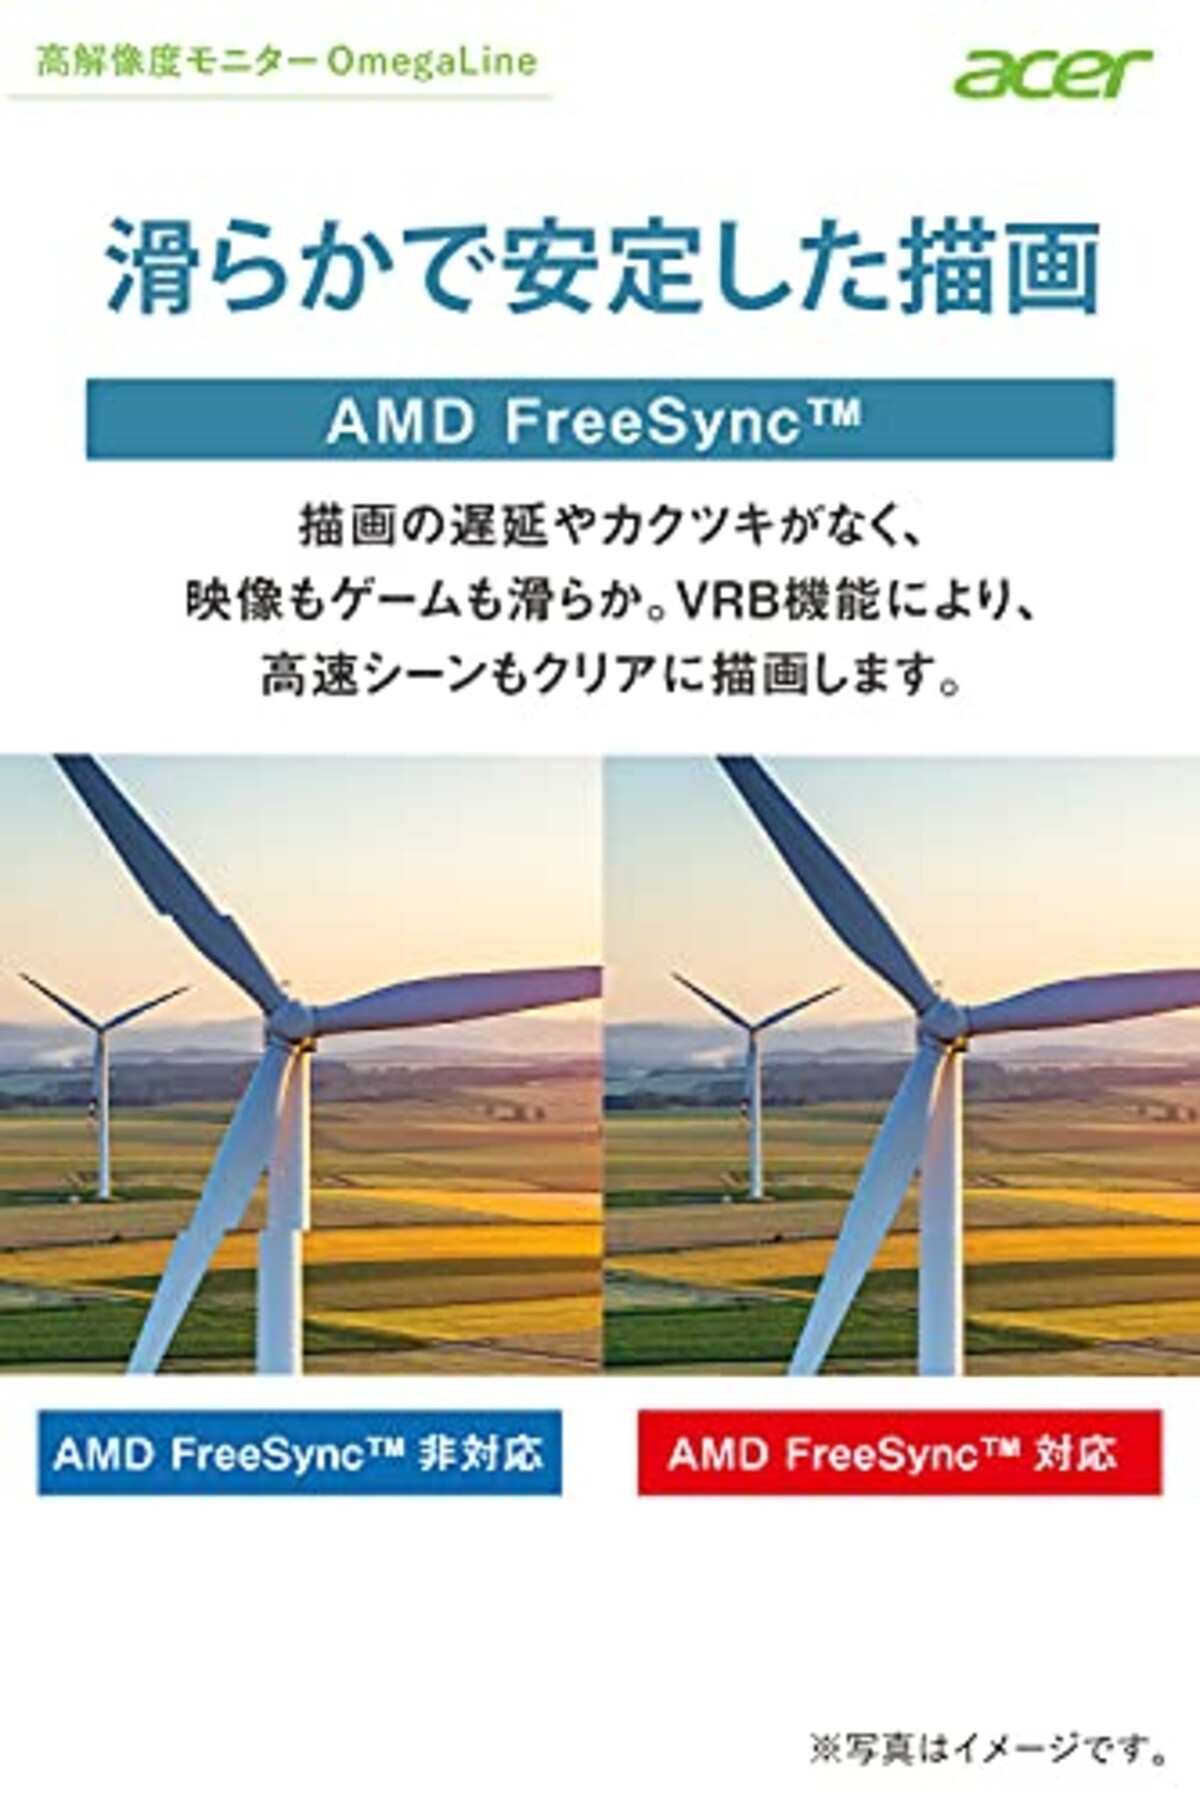  日本エイサー Acer ウルトラワイドモニター CB292CUbmiiprx 29インチ IPS 非光沢 UWFHD 1ms(VRB) 75Hz HDMI FreeSync スピーカー搭載 VESAマウント対応(100mm x 100mm)高さ調整 スイベル チルト フリッカーレス ブルーライト軽減画像4 